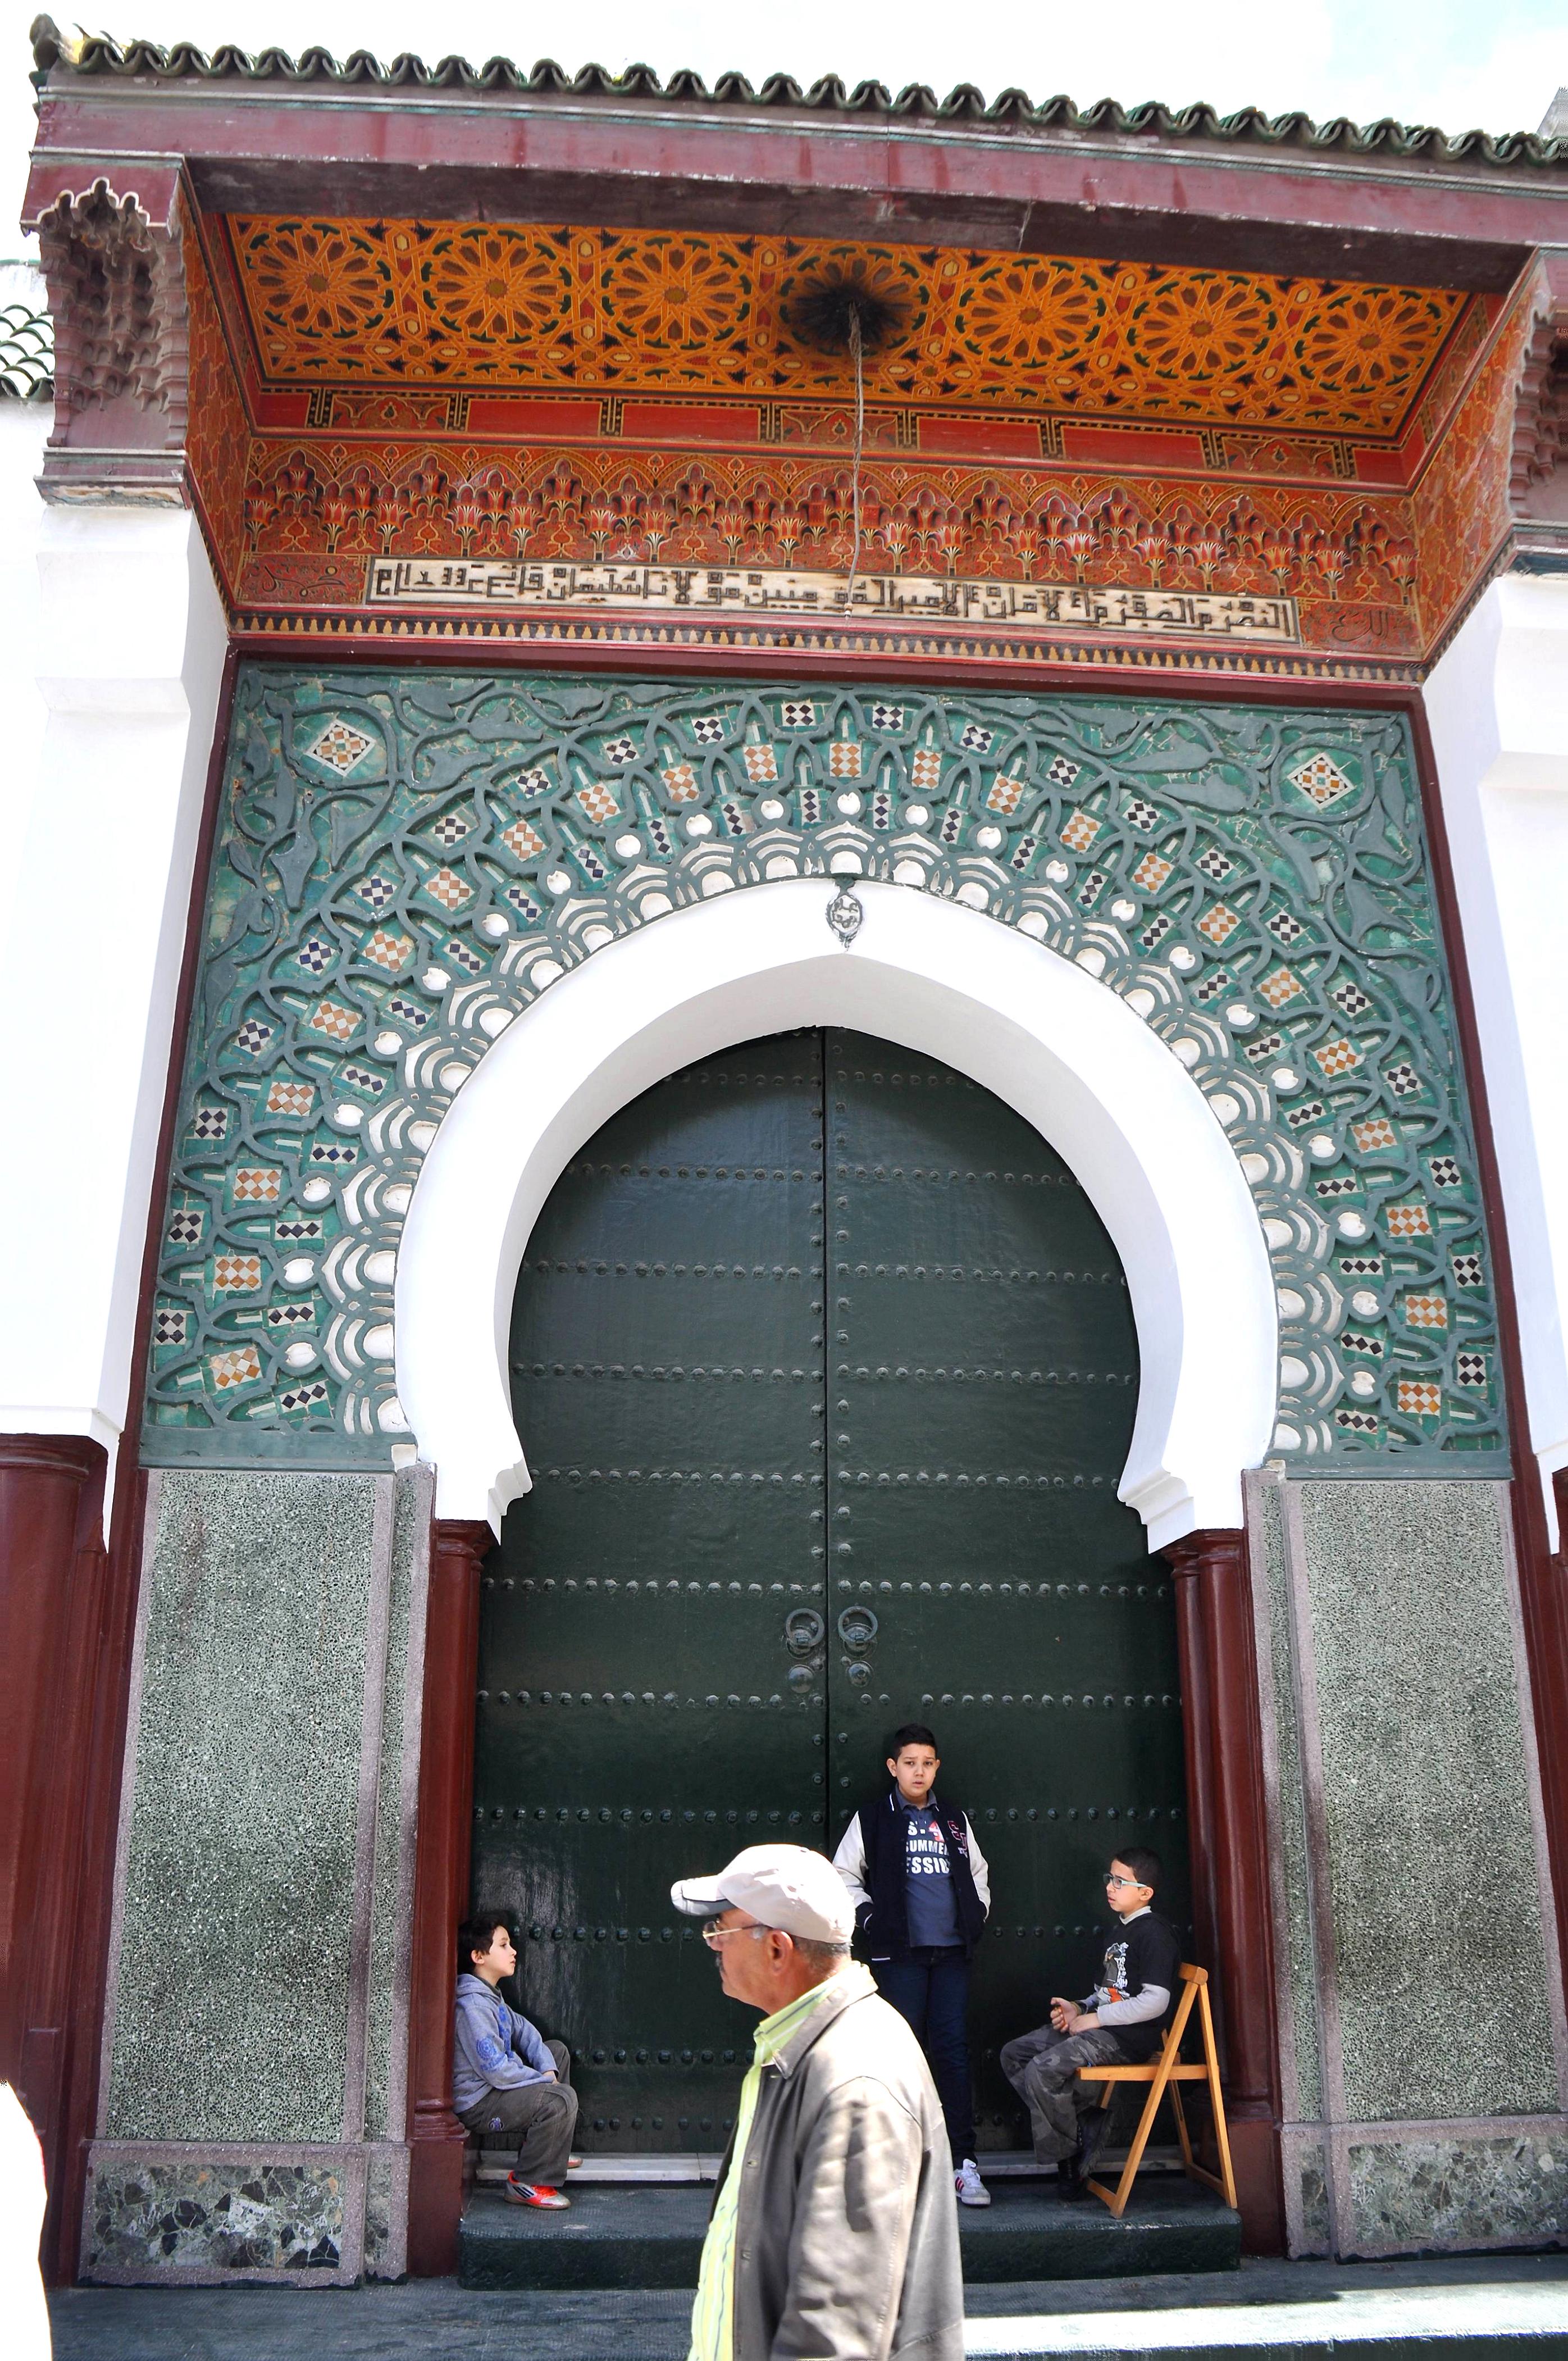 Foto: Puerta tipi marroqui - Tanger (Tanger-Tétouan), Marruecos